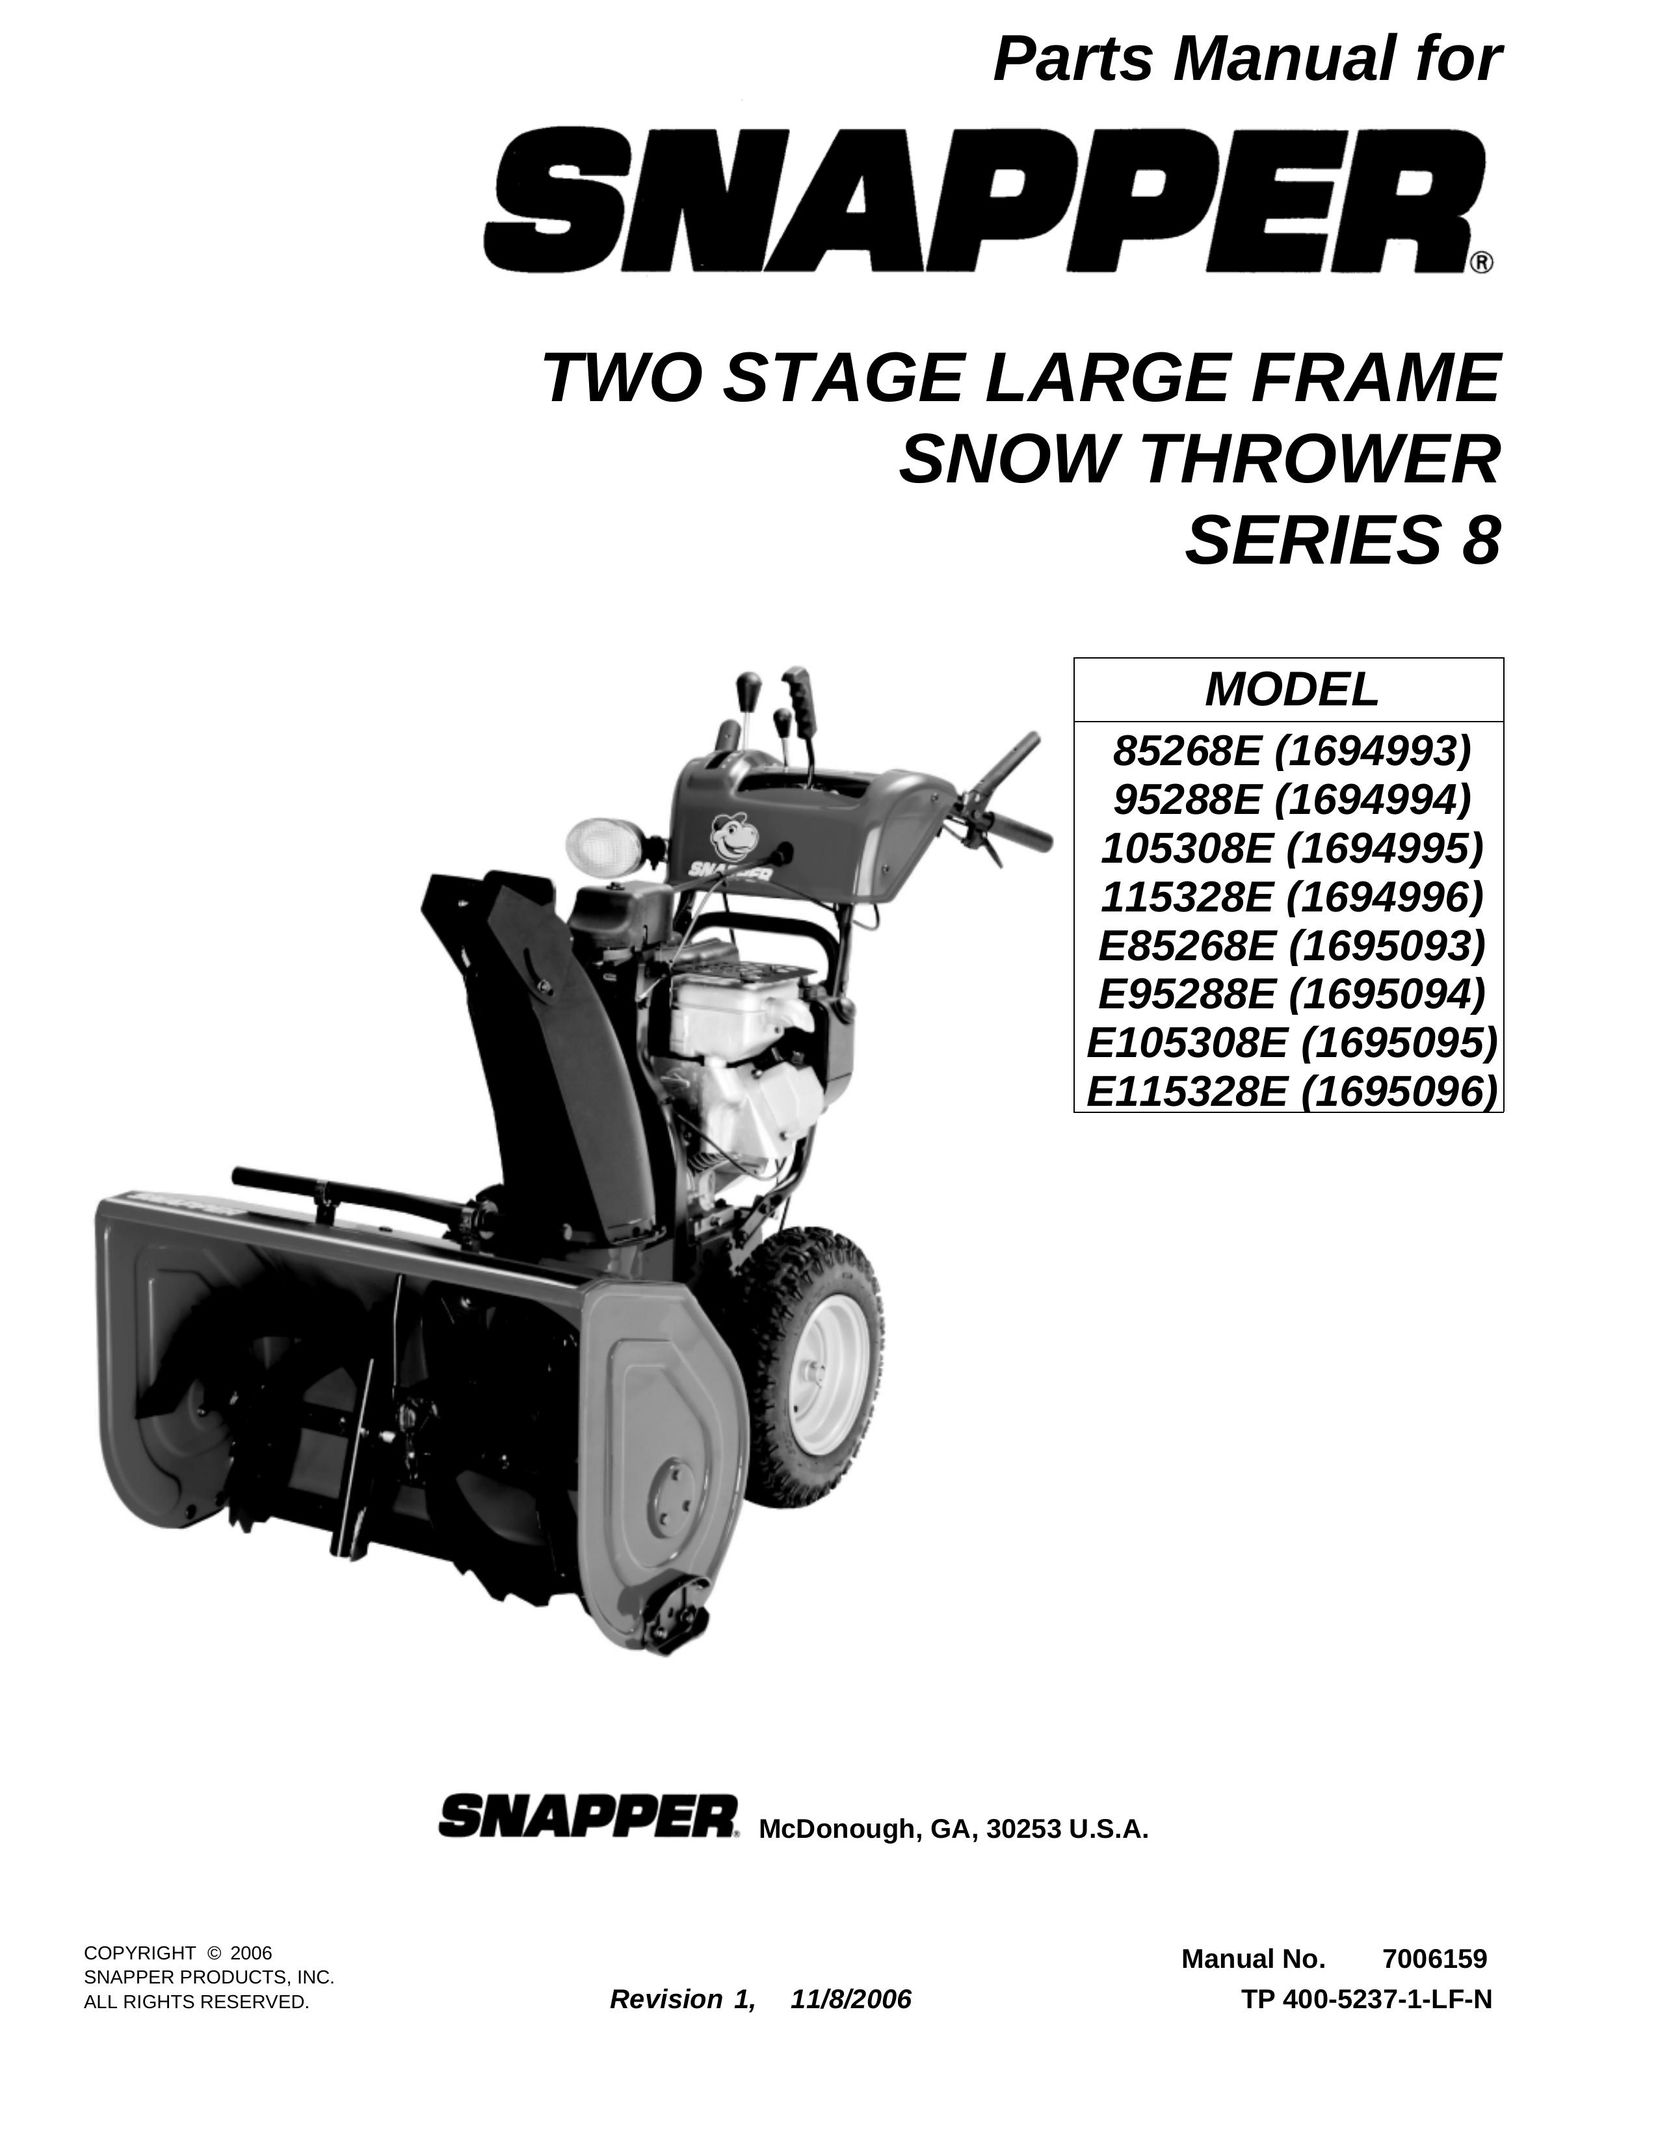 Snapper E115328E VCR User Manual